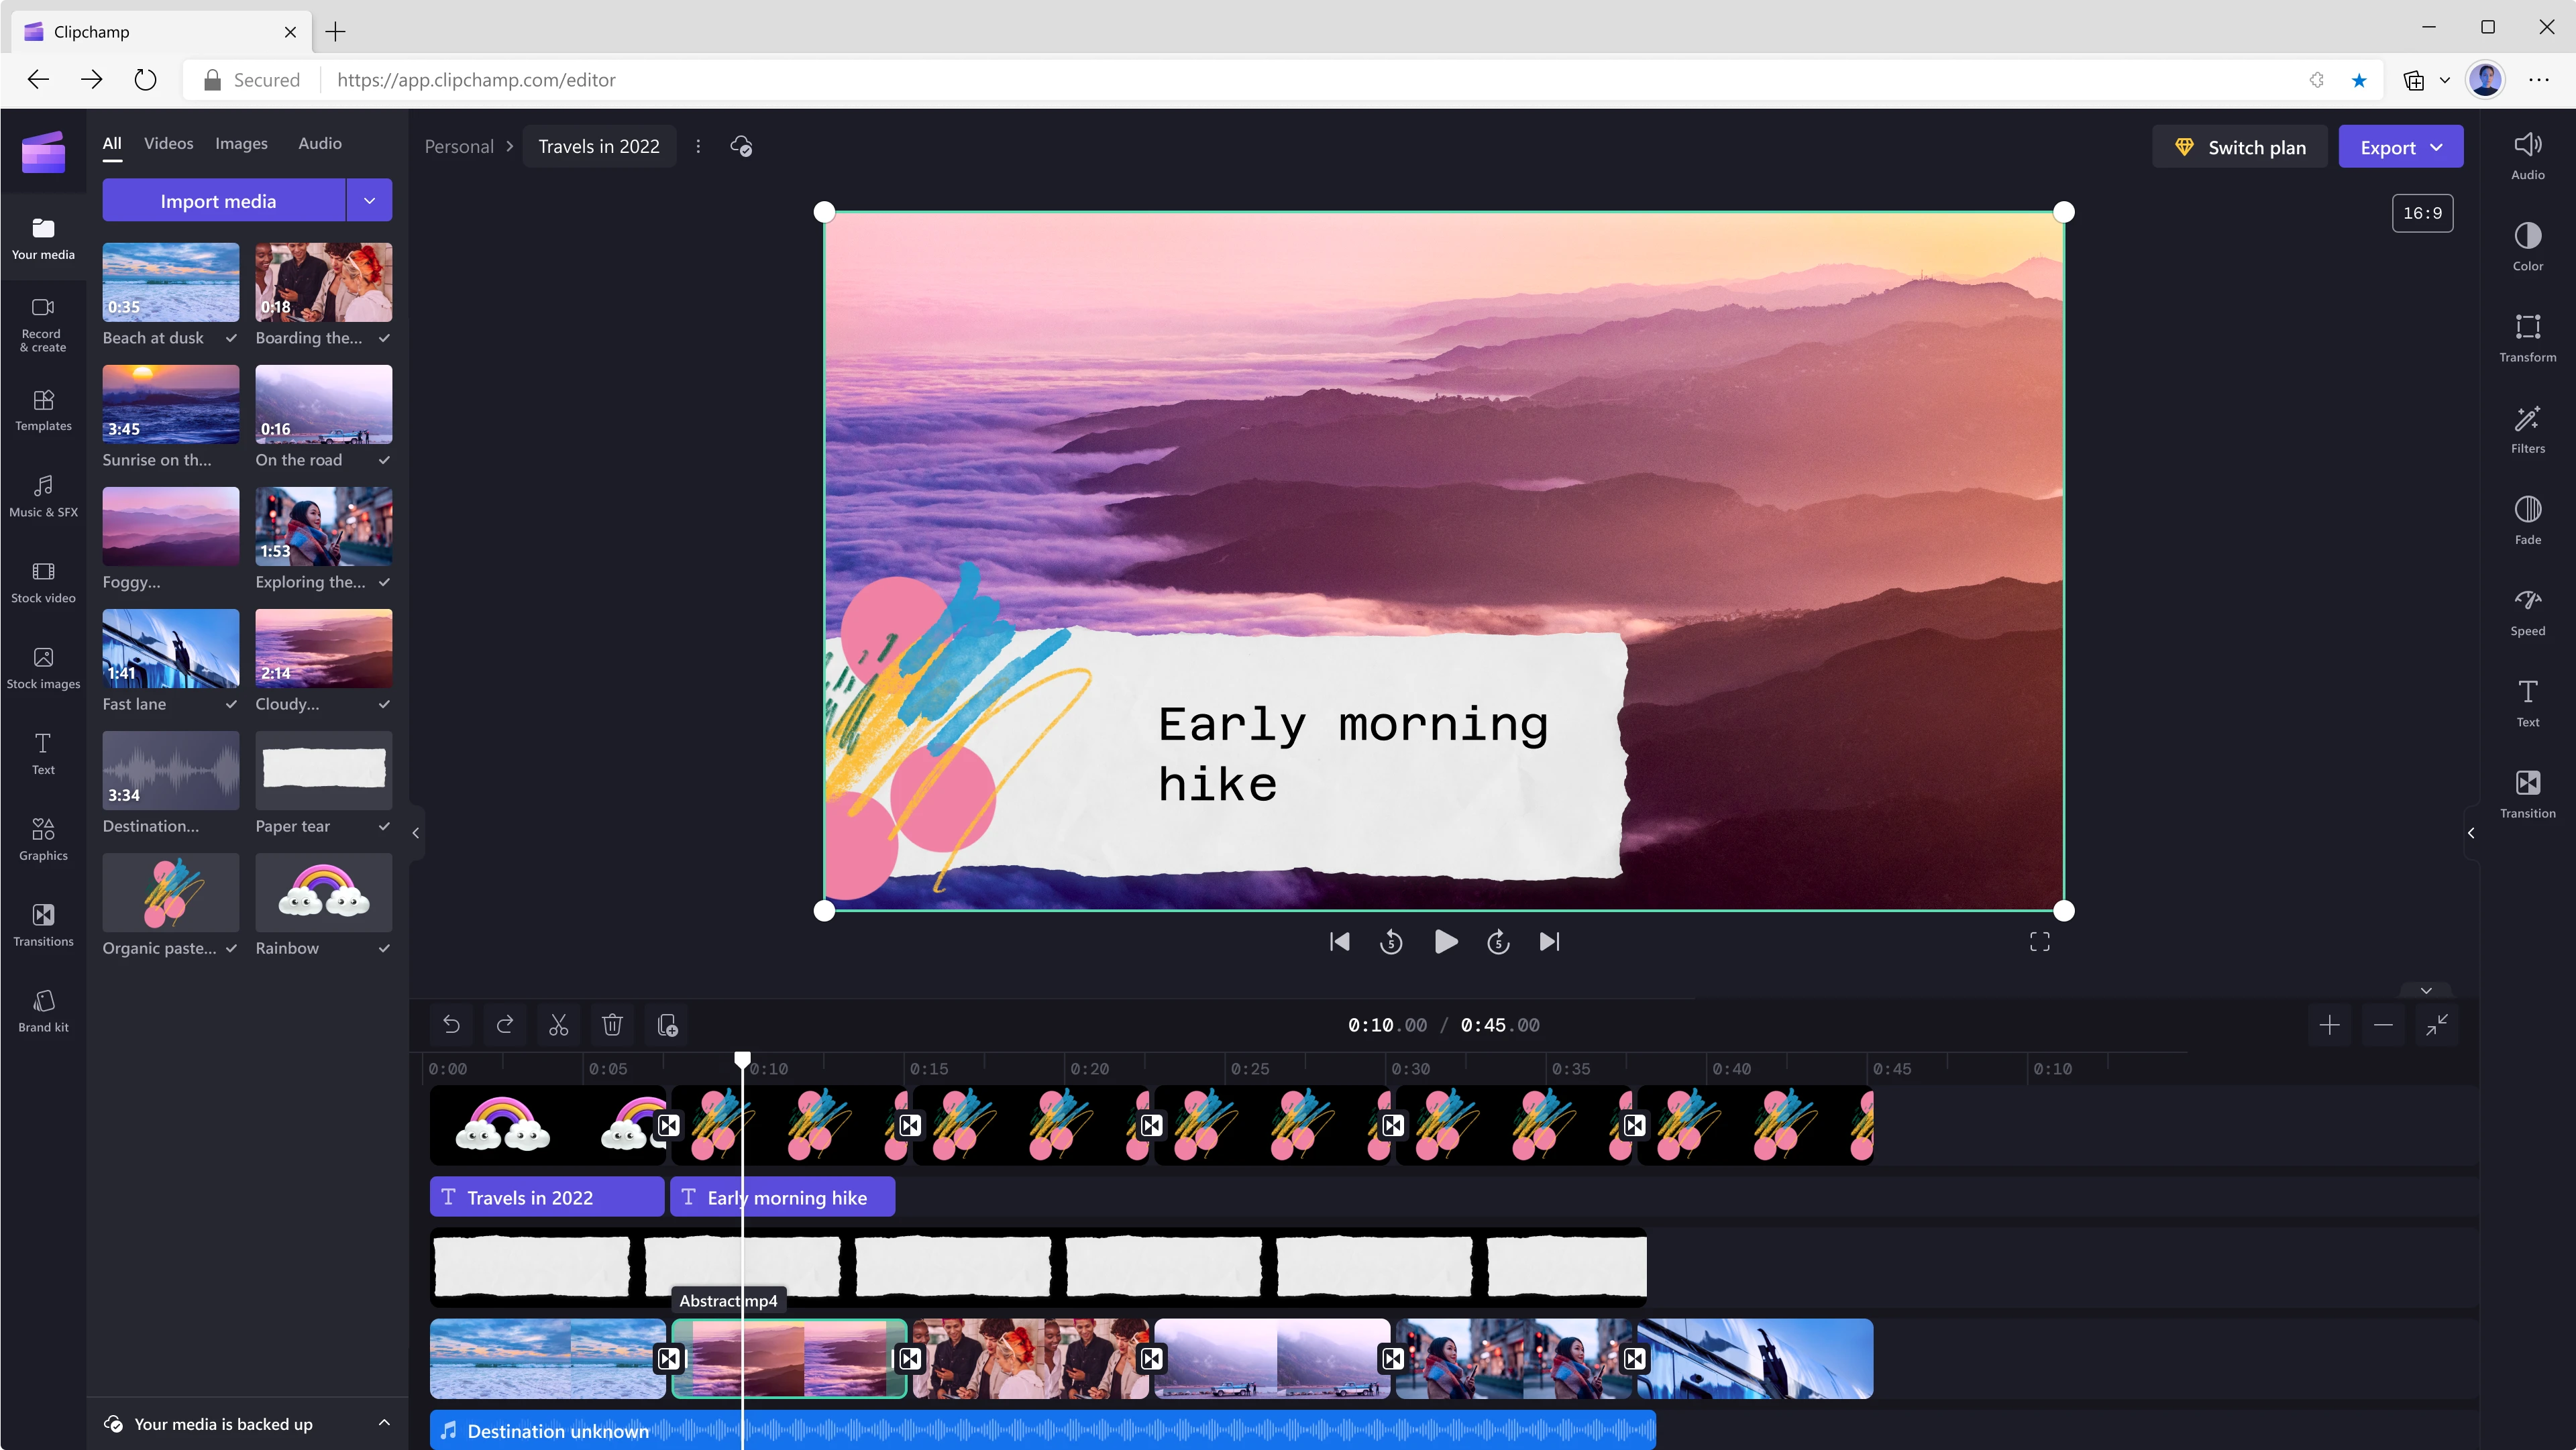 正在透過 Clipchamp 編輯一個 45 秒影片的使用者。位於 10 秒的標記範圍顯示紫色色調的山脈與雲朵，而 Early morning hike 的字樣覆蓋在影片框架上。